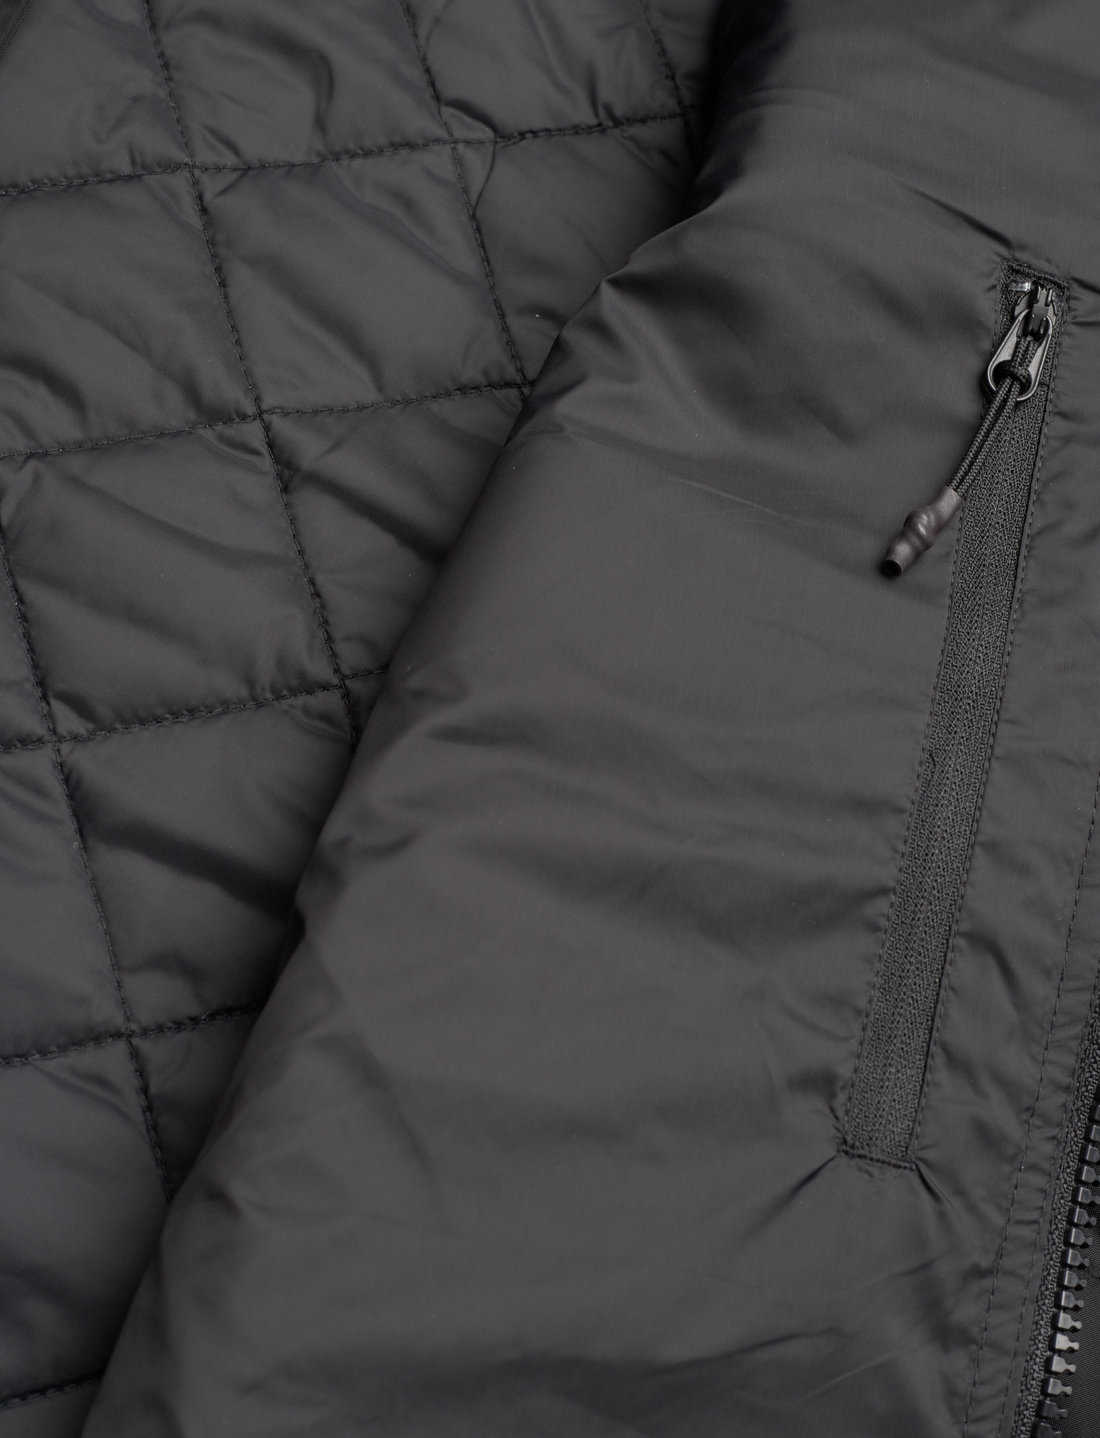 Replay Jacket Regular – jackets & coats – shop at Booztlet